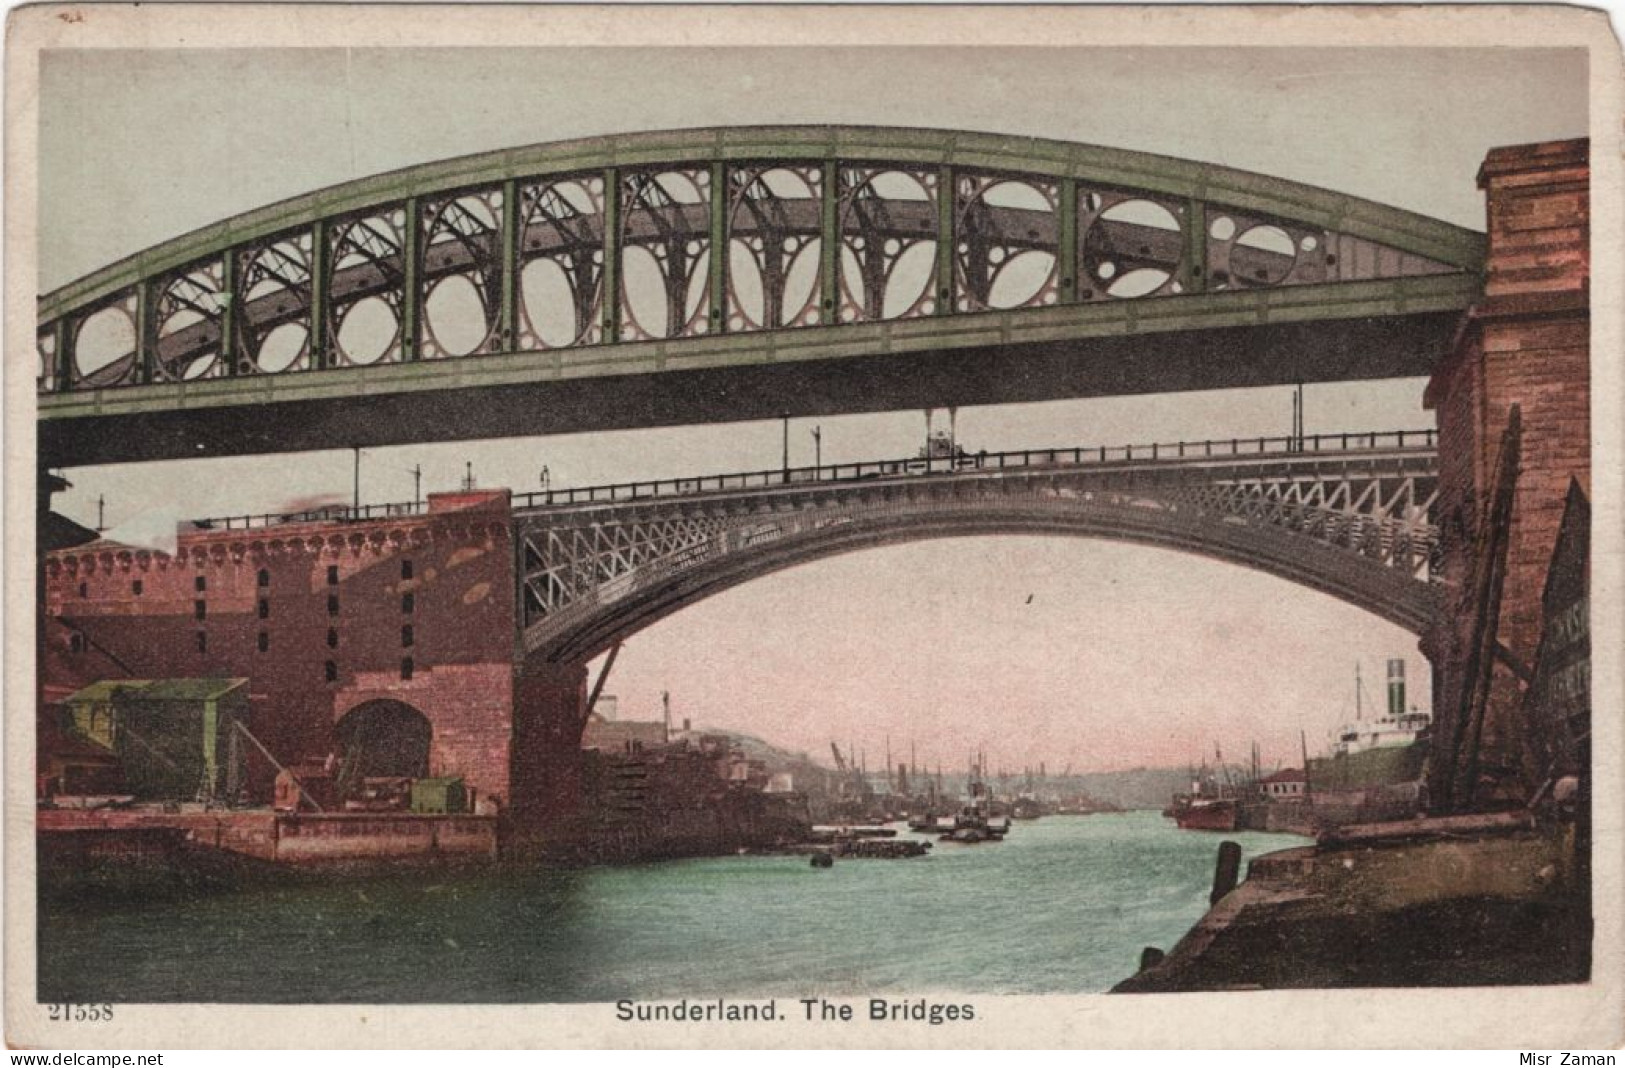 In 6 Languages Read Story: Sunderland. The Bridges. Colourful Coloured | Les Ponts. Colorée - Durham City